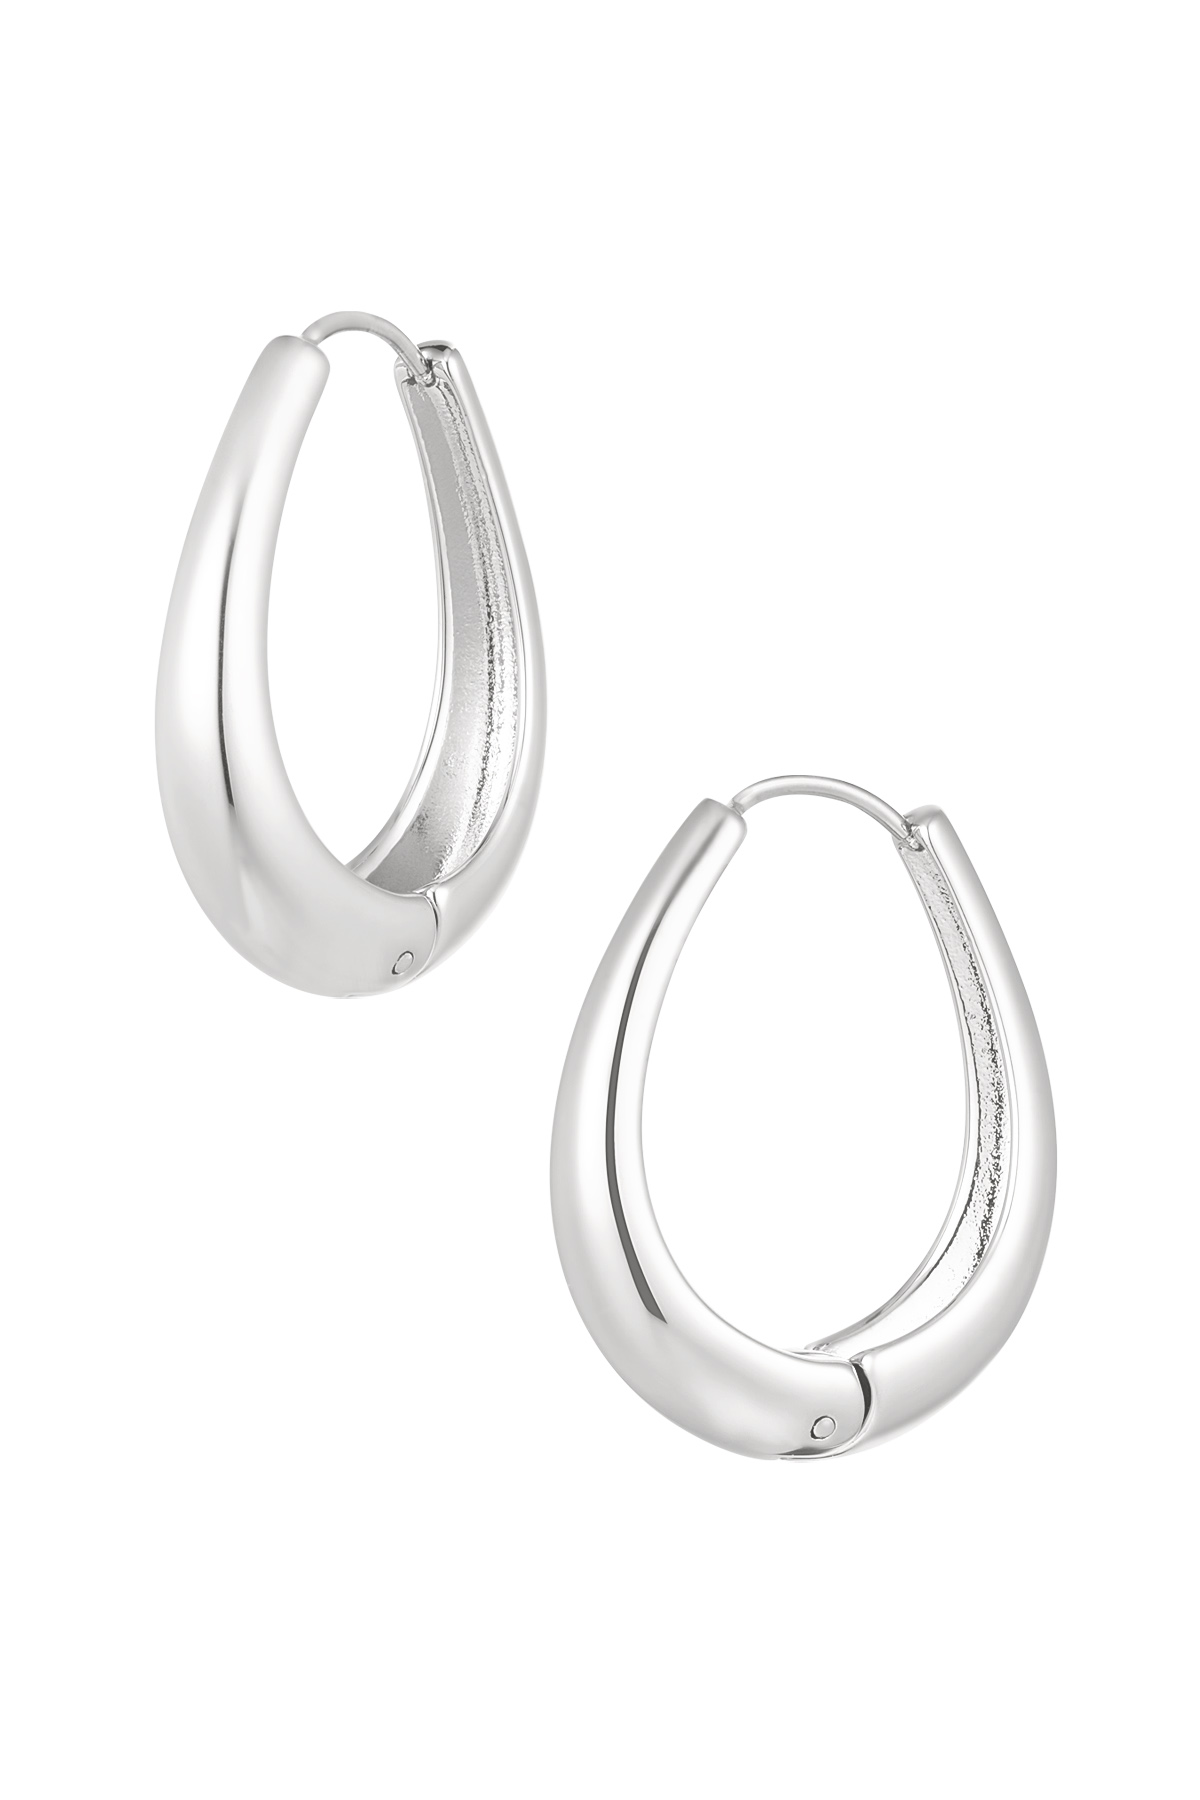 Earrings classy oval - Silver Stainless Steel 